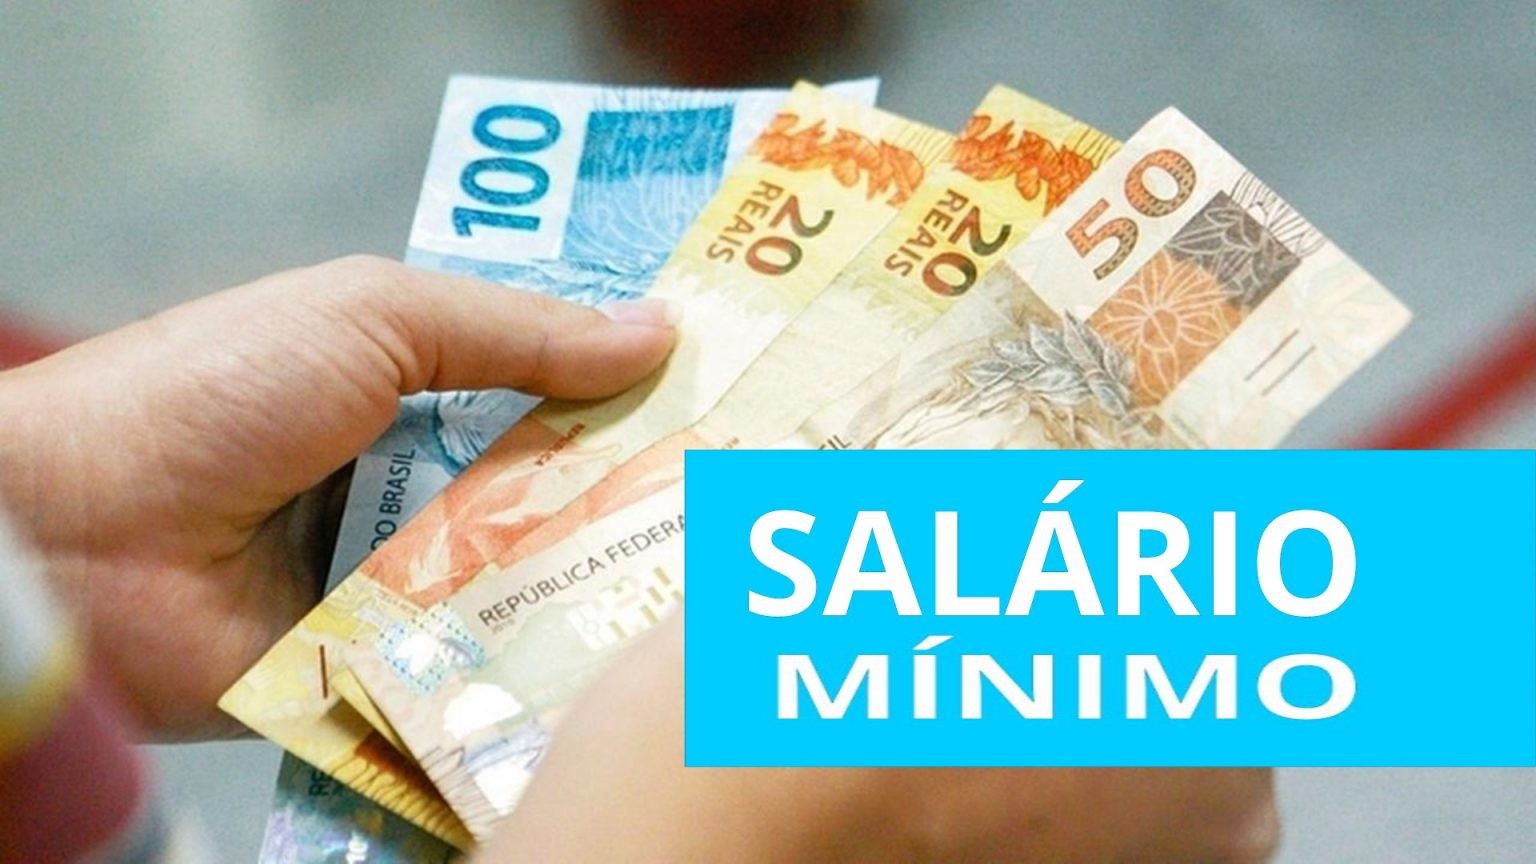 Lula anuncia salário mínimo a R$ 1.320 e isenção de IR a R$ 2.640